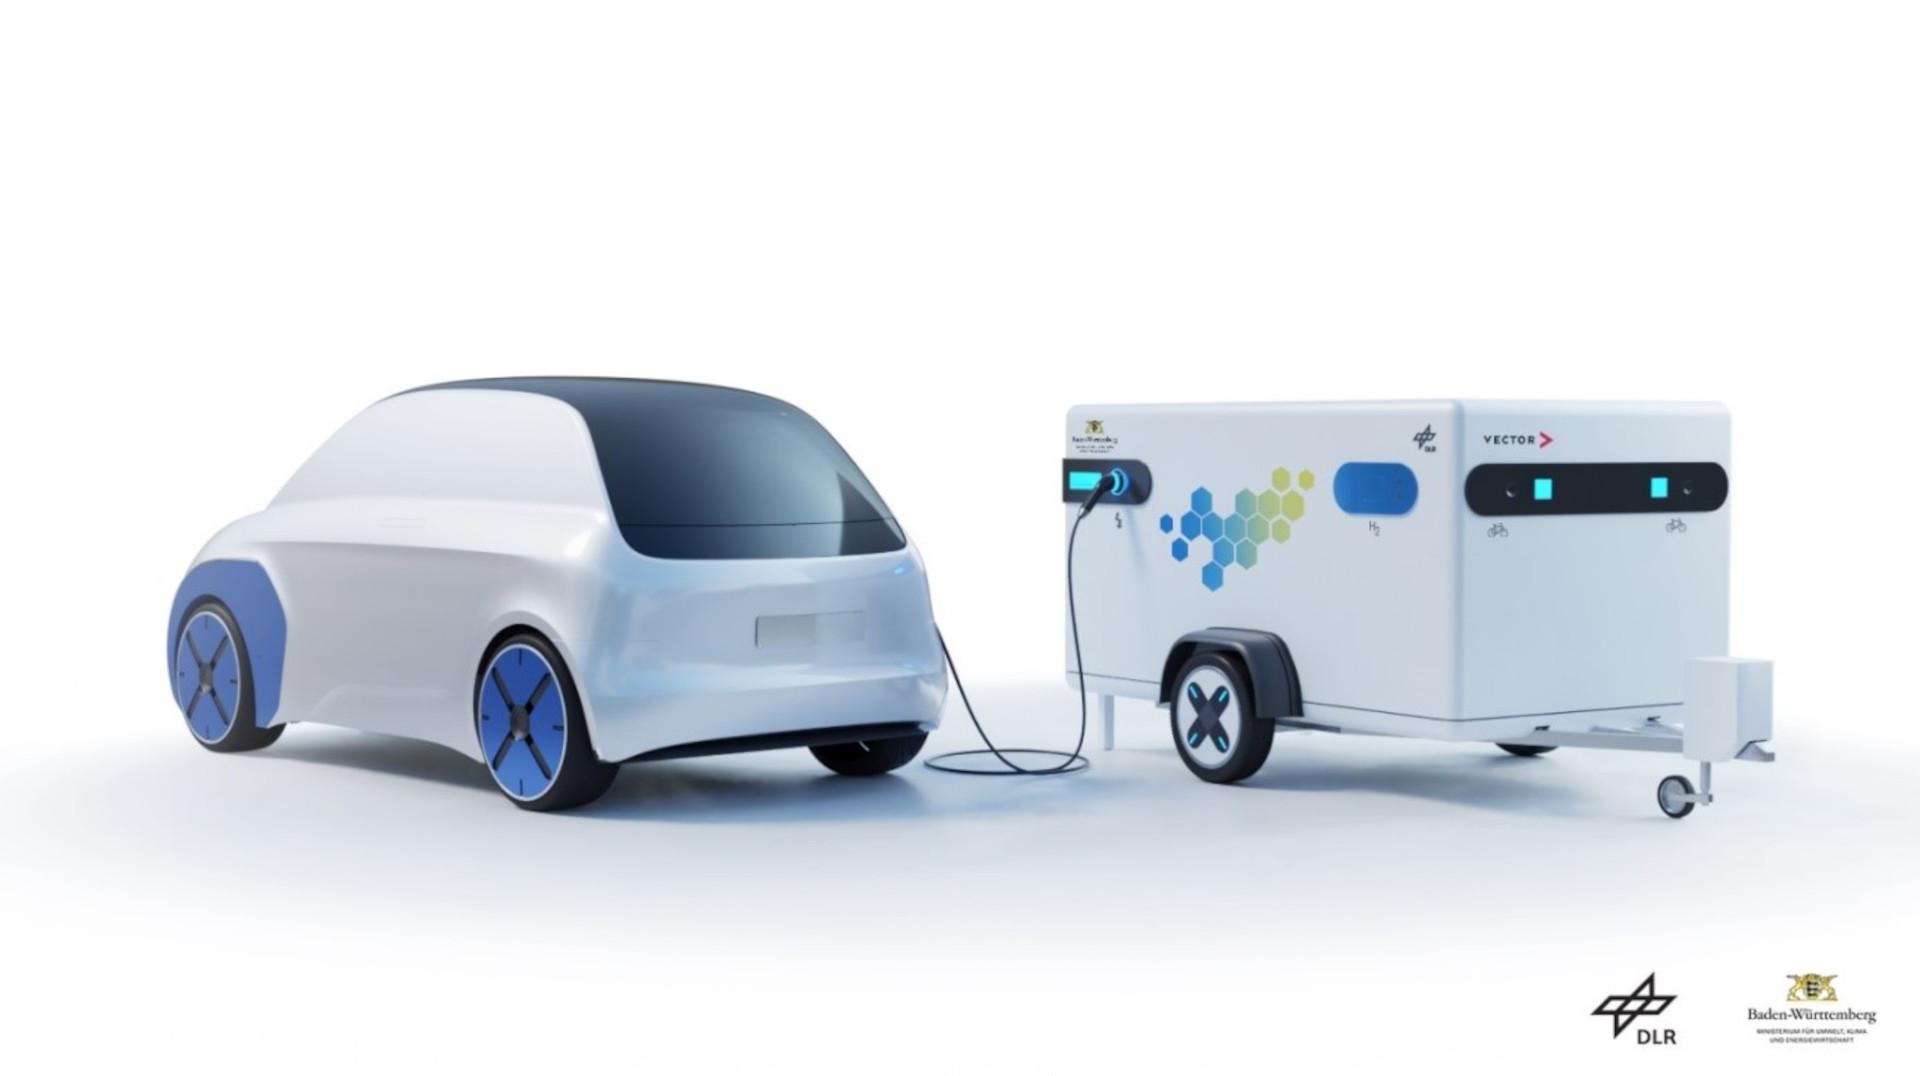 Powerbank fürs E-Auto: Unternehmen entwickelt mobile Ladestationen